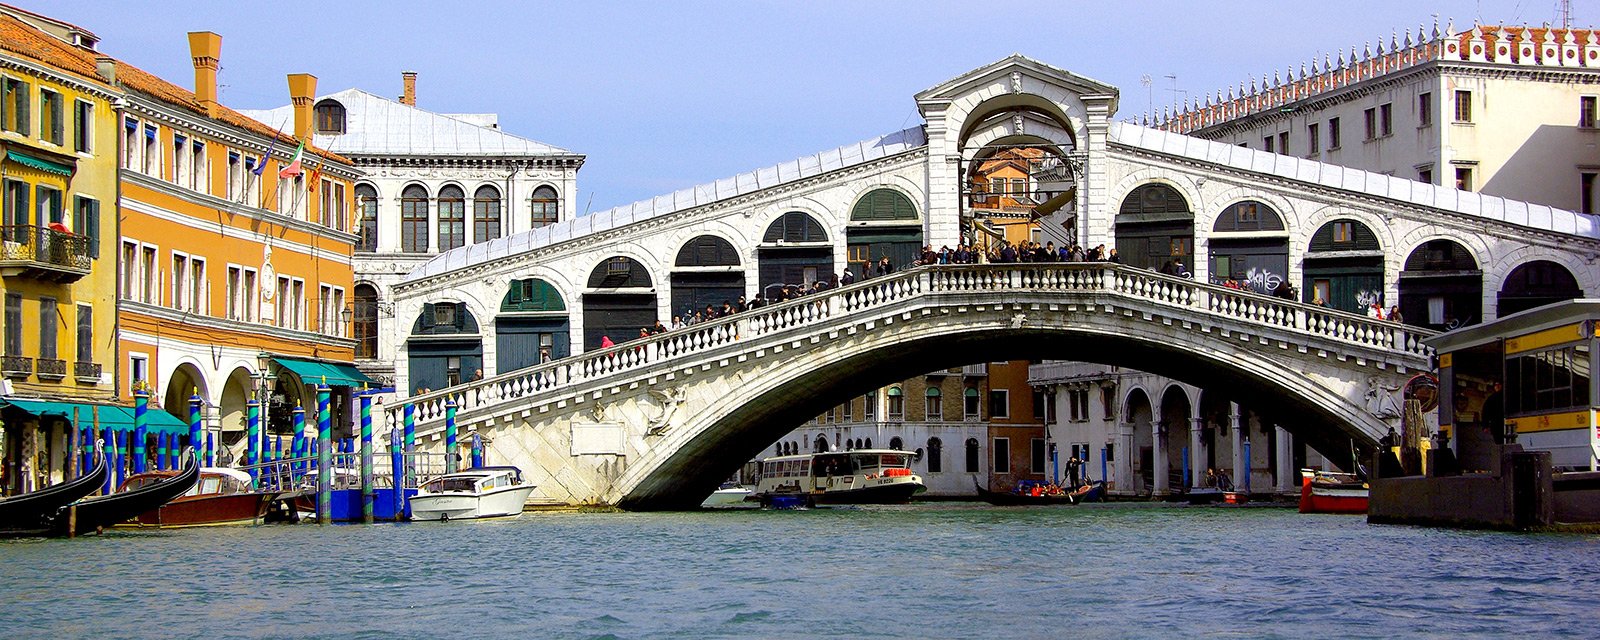 Как прогуляться по мосту Риальто в Венеции